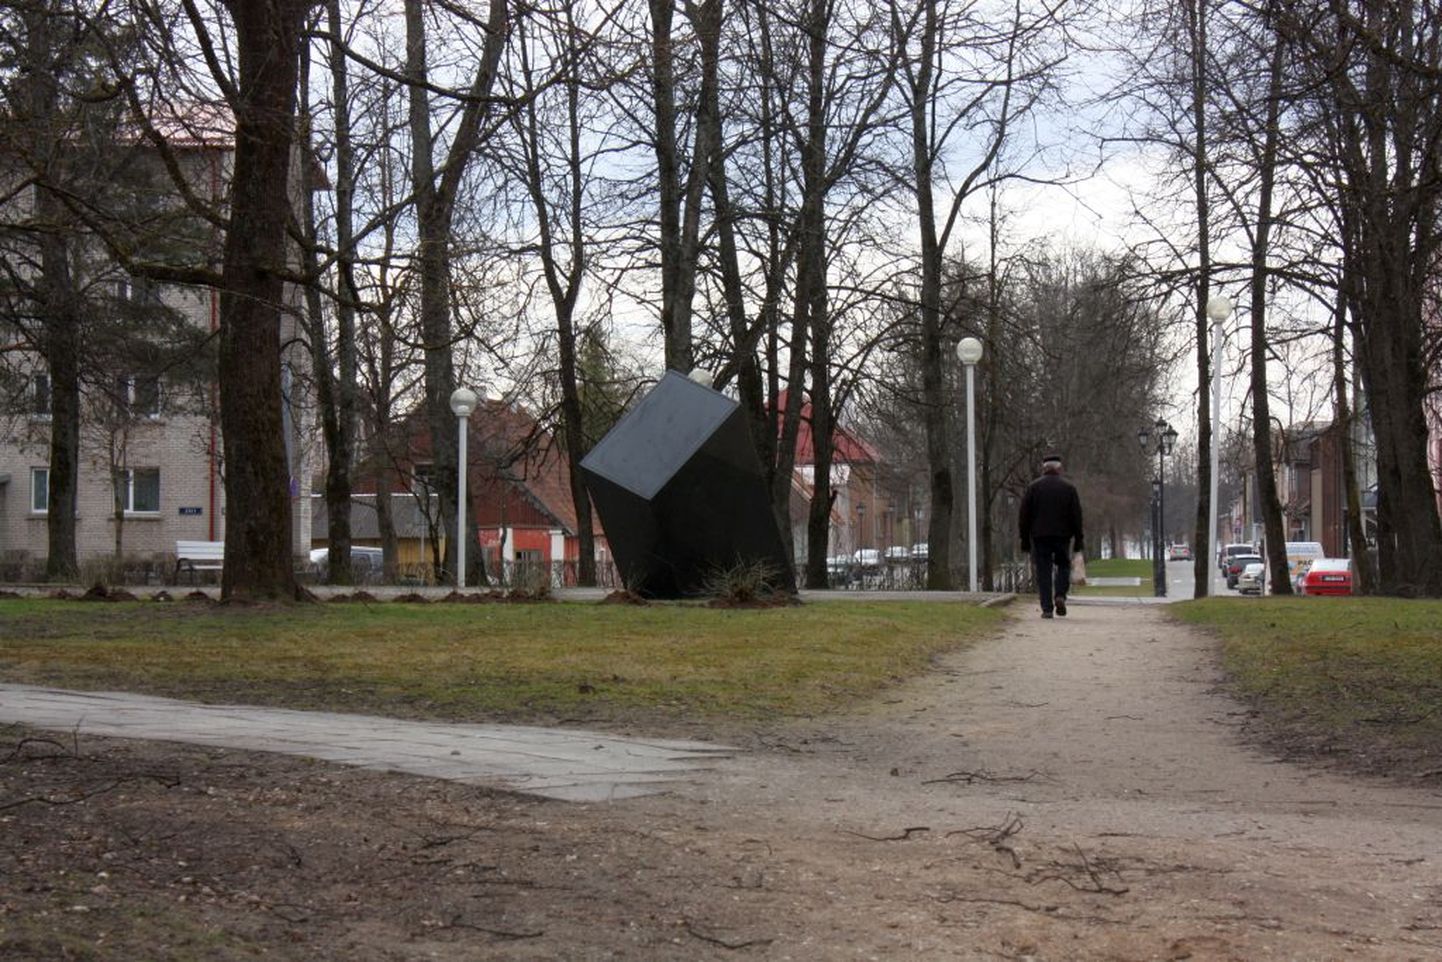 Võru Seminari väljak koos Estonia monumendiga.